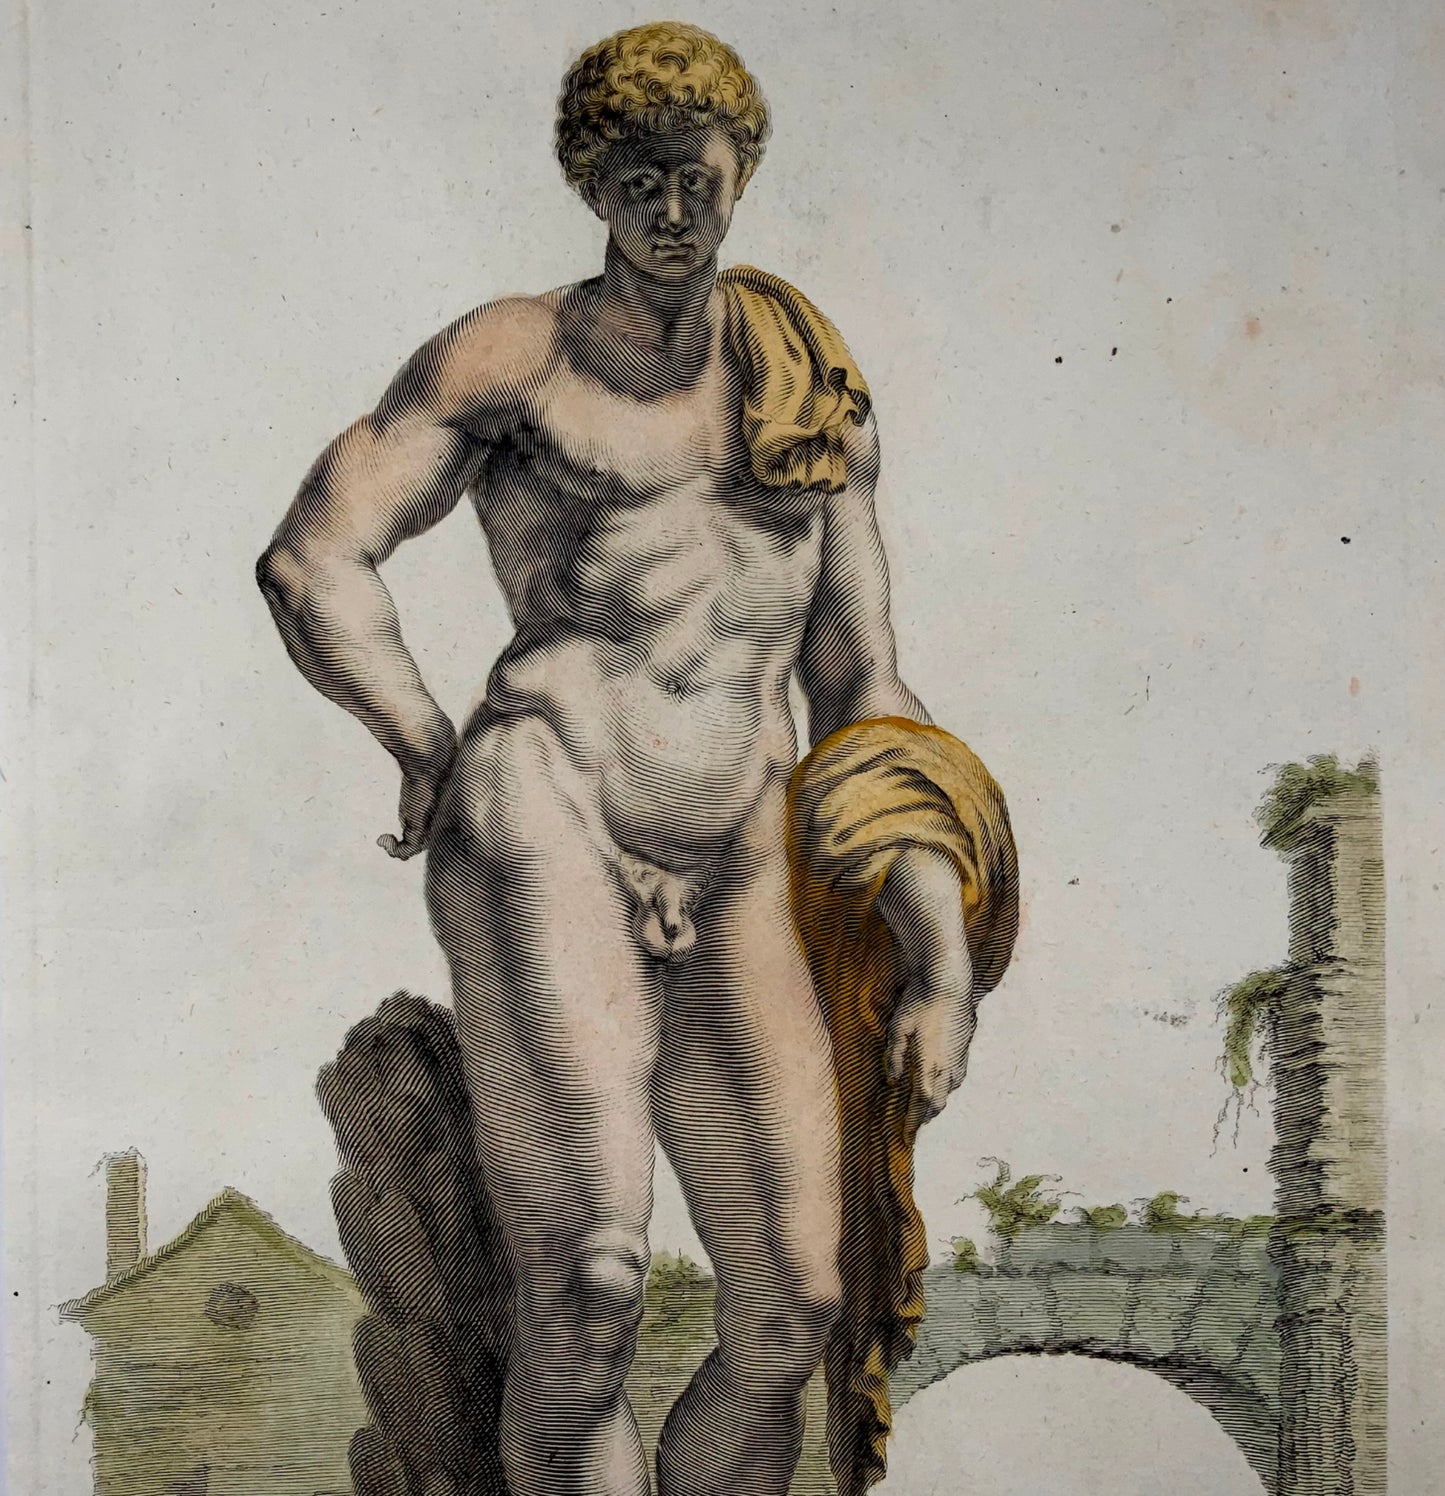 1676 Thourneysen d'après Sandrart Antinous, amoureux de l'empereur romain Hadrien 